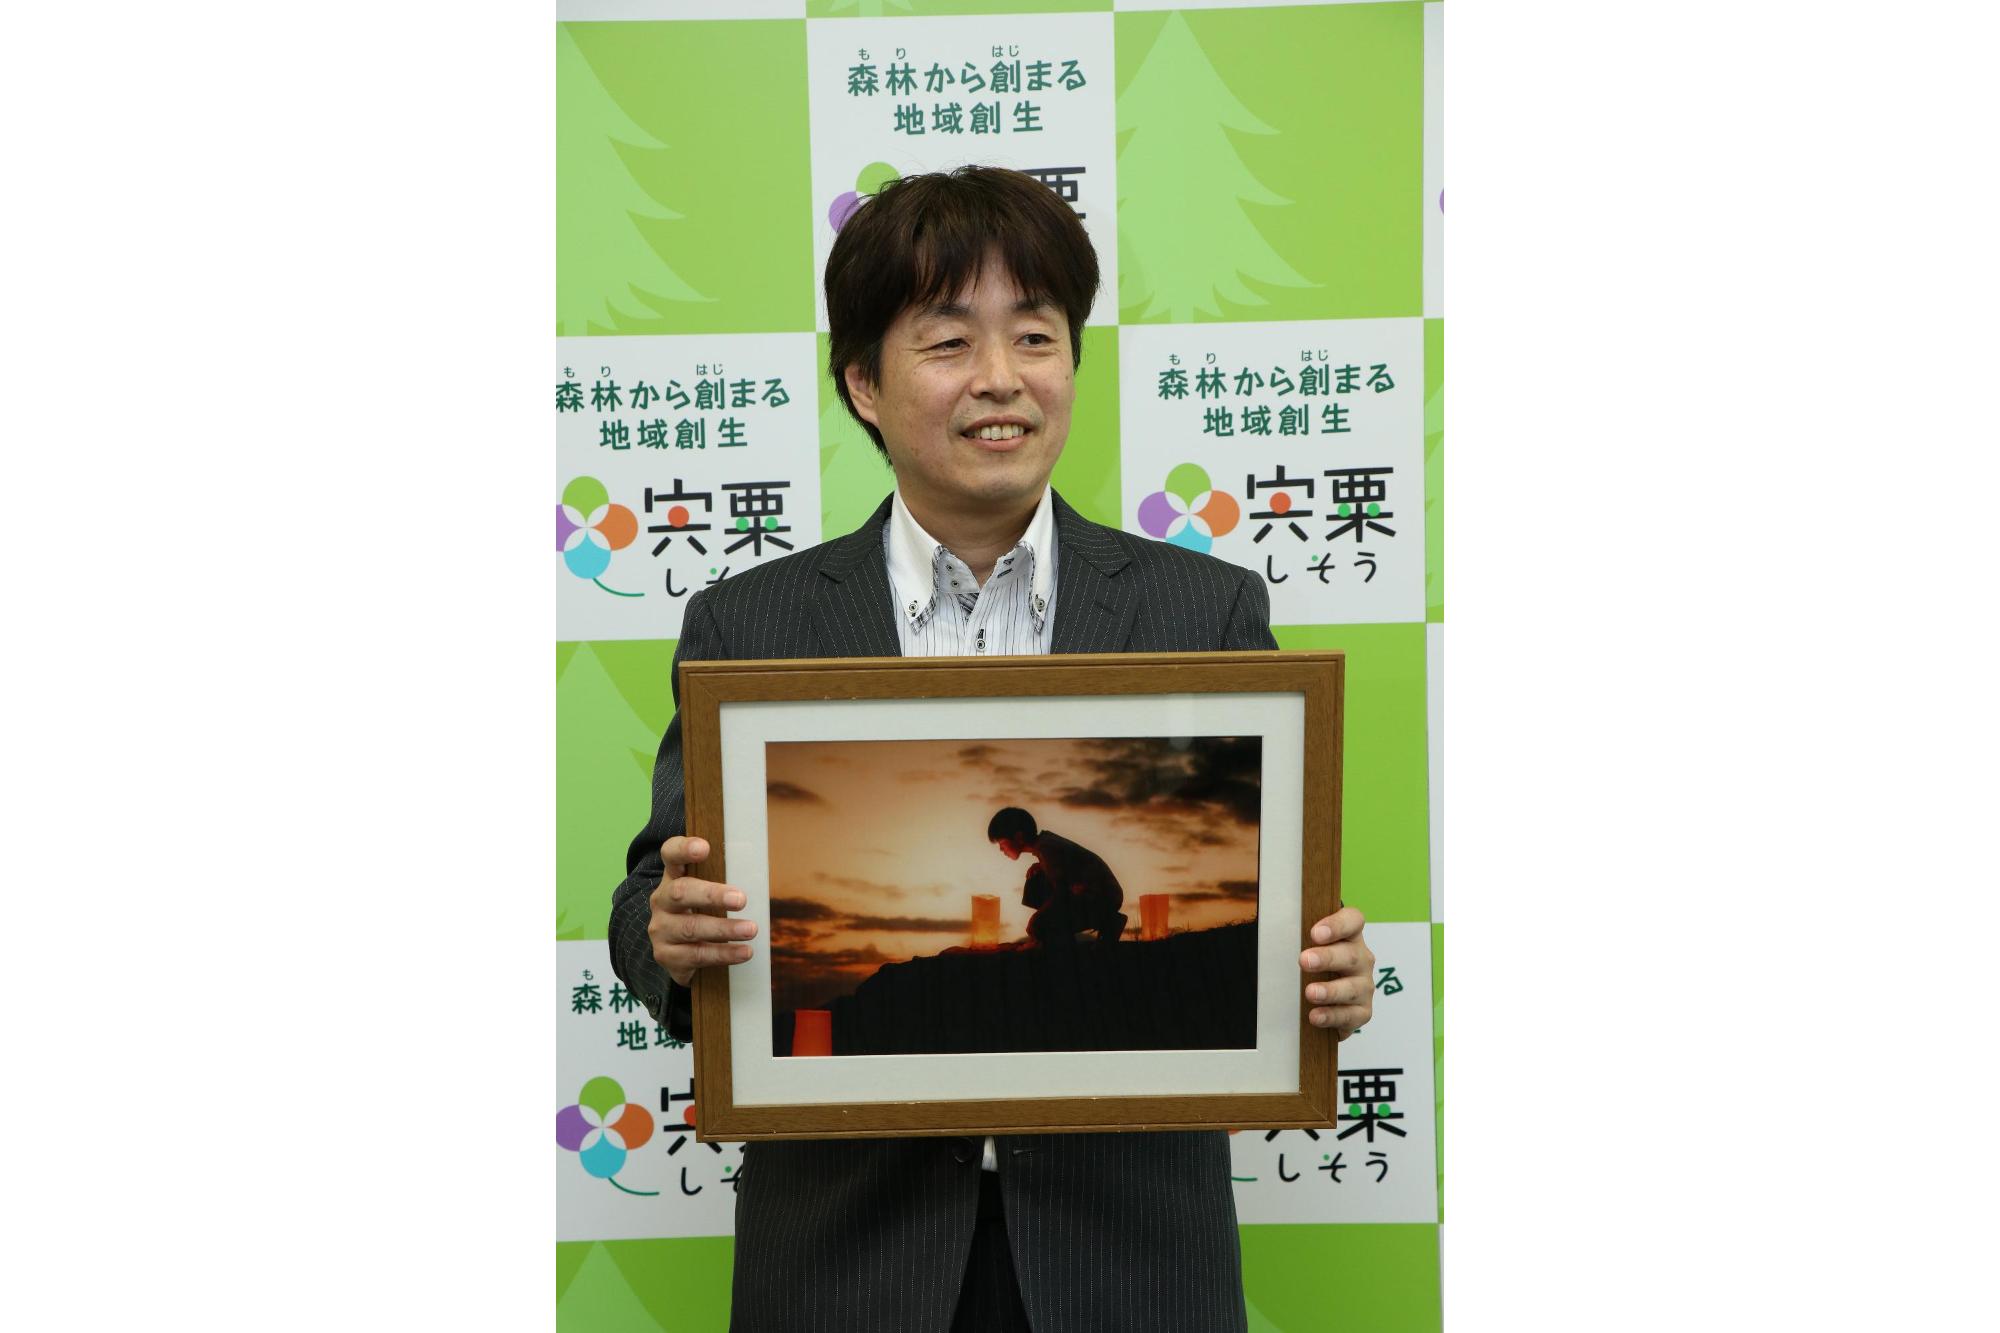 最優秀グランプリを受賞したスーツ姿の小林さんが笑顔で作品を手にしている記念写真